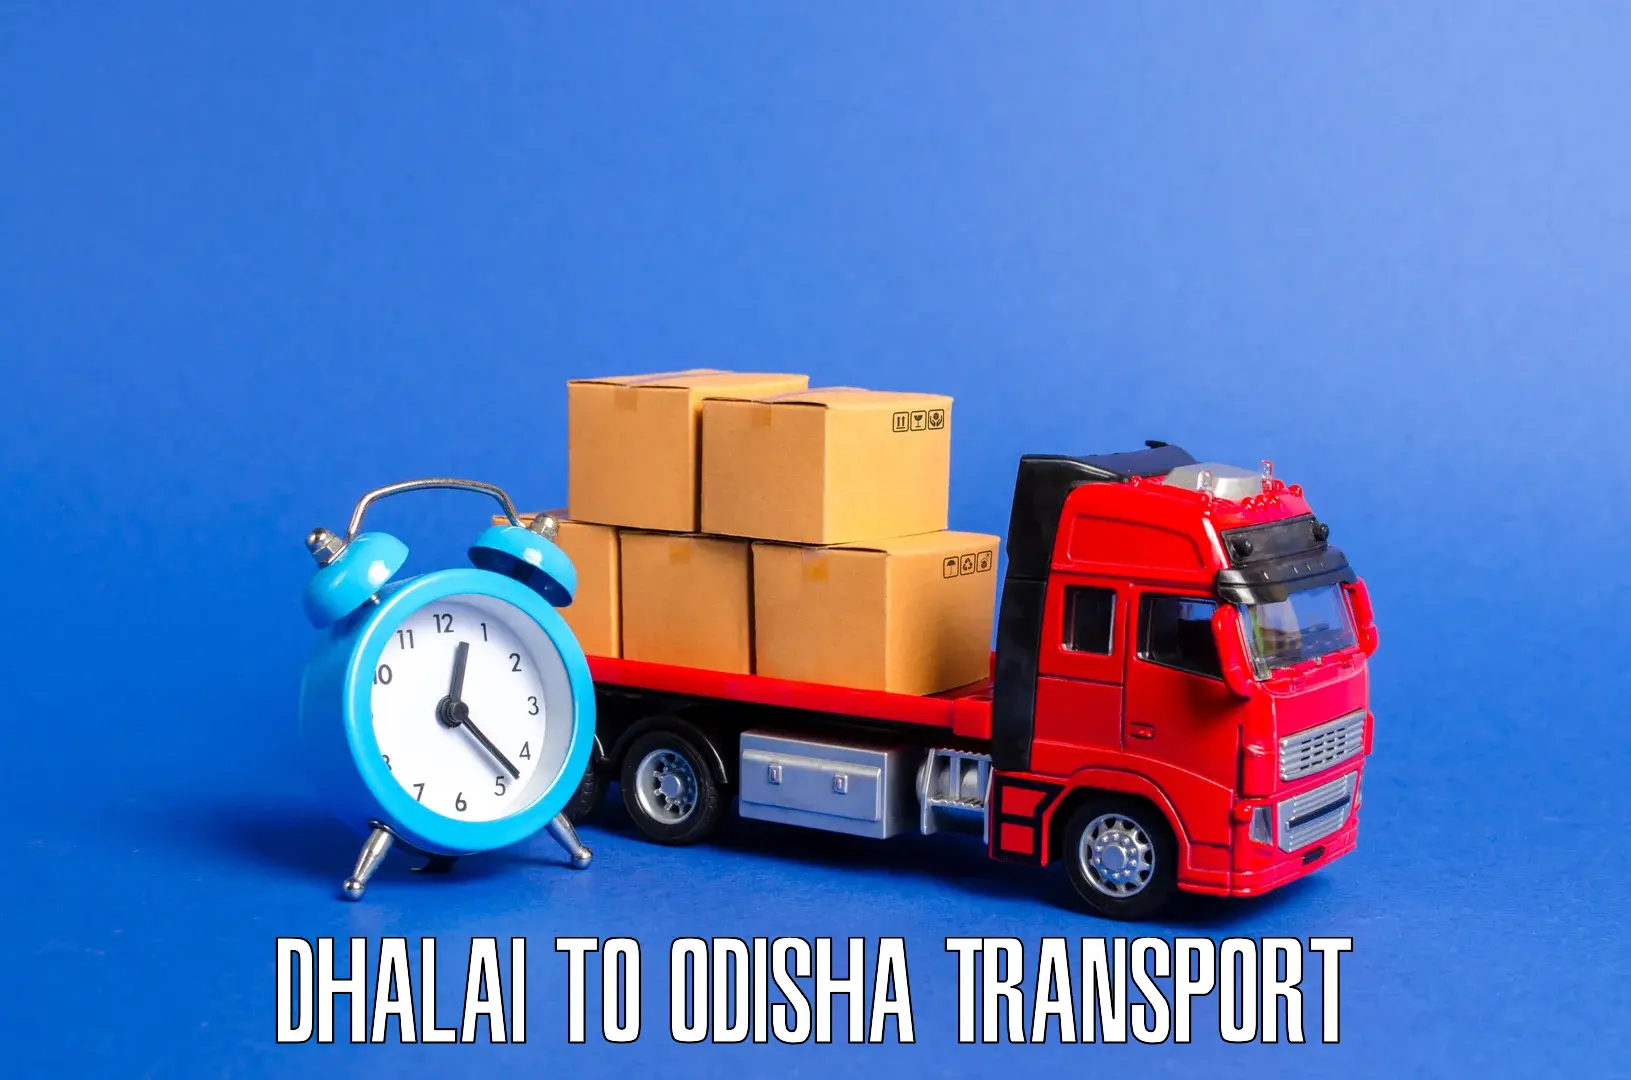 Daily parcel service transport Dhalai to Kantamal